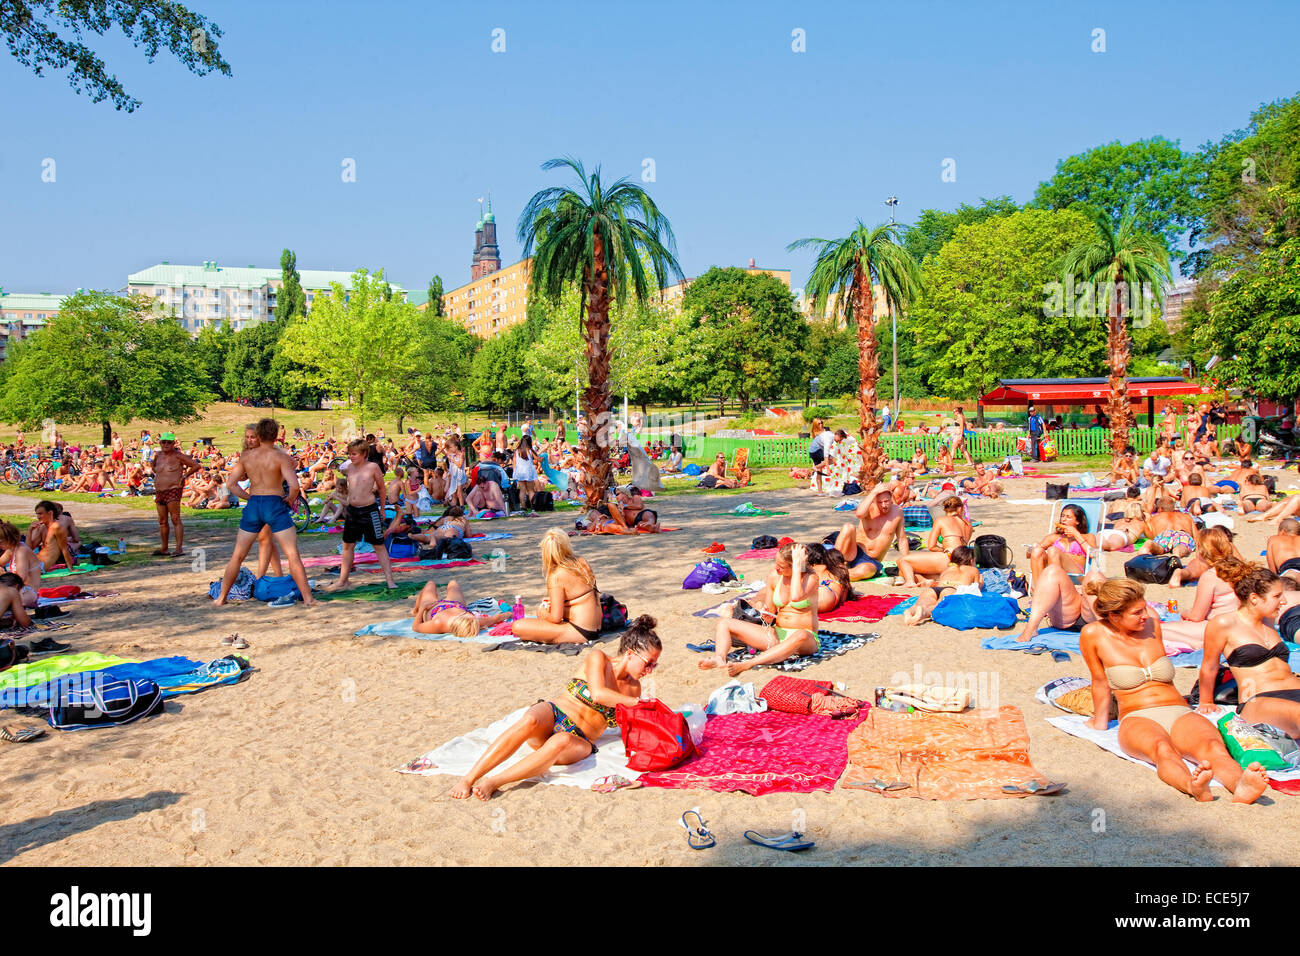 Suède, Stockholm - les gens sur la plage au soleil en été Hornstull Banque D'Images